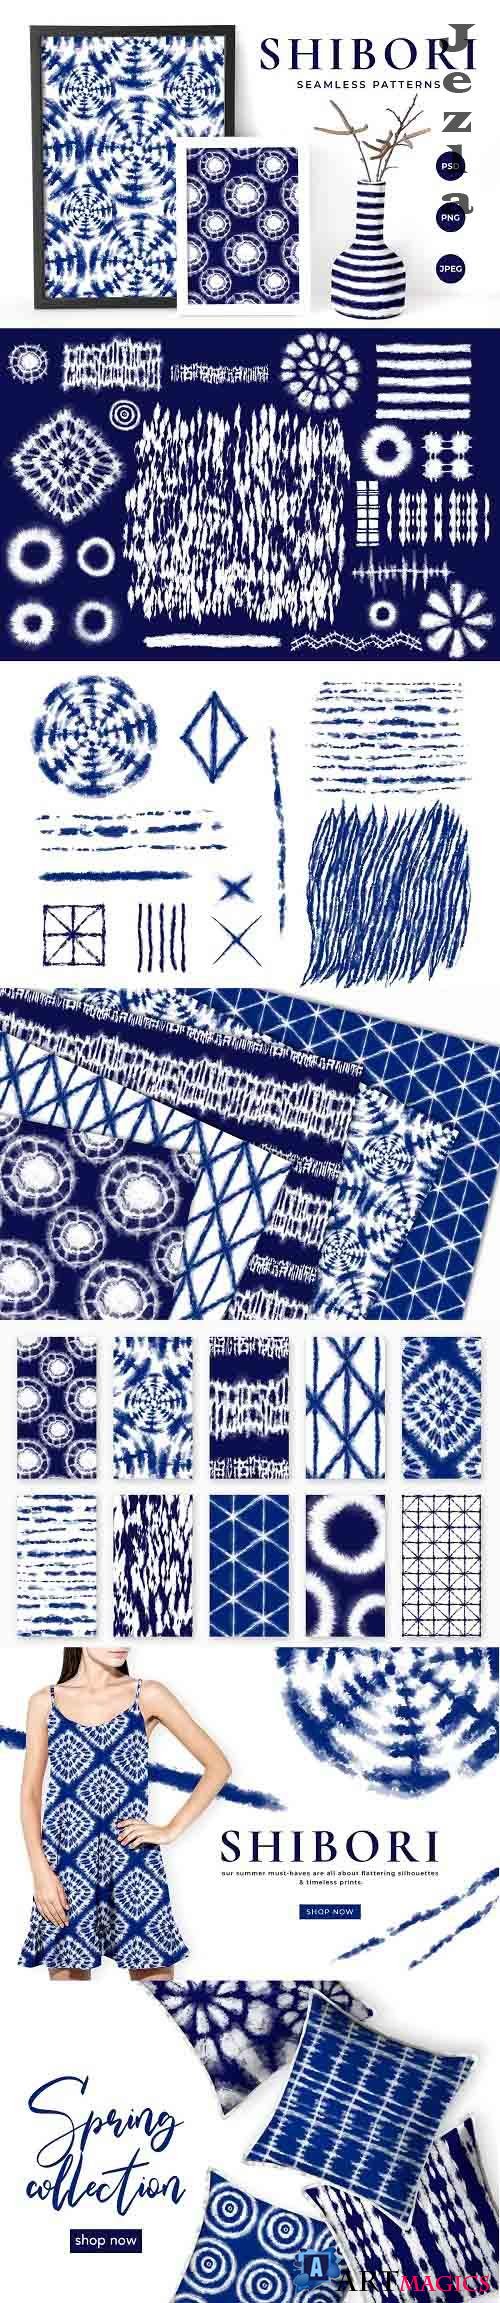 Shibori Tie Dye Seamless Patterns - 4899724